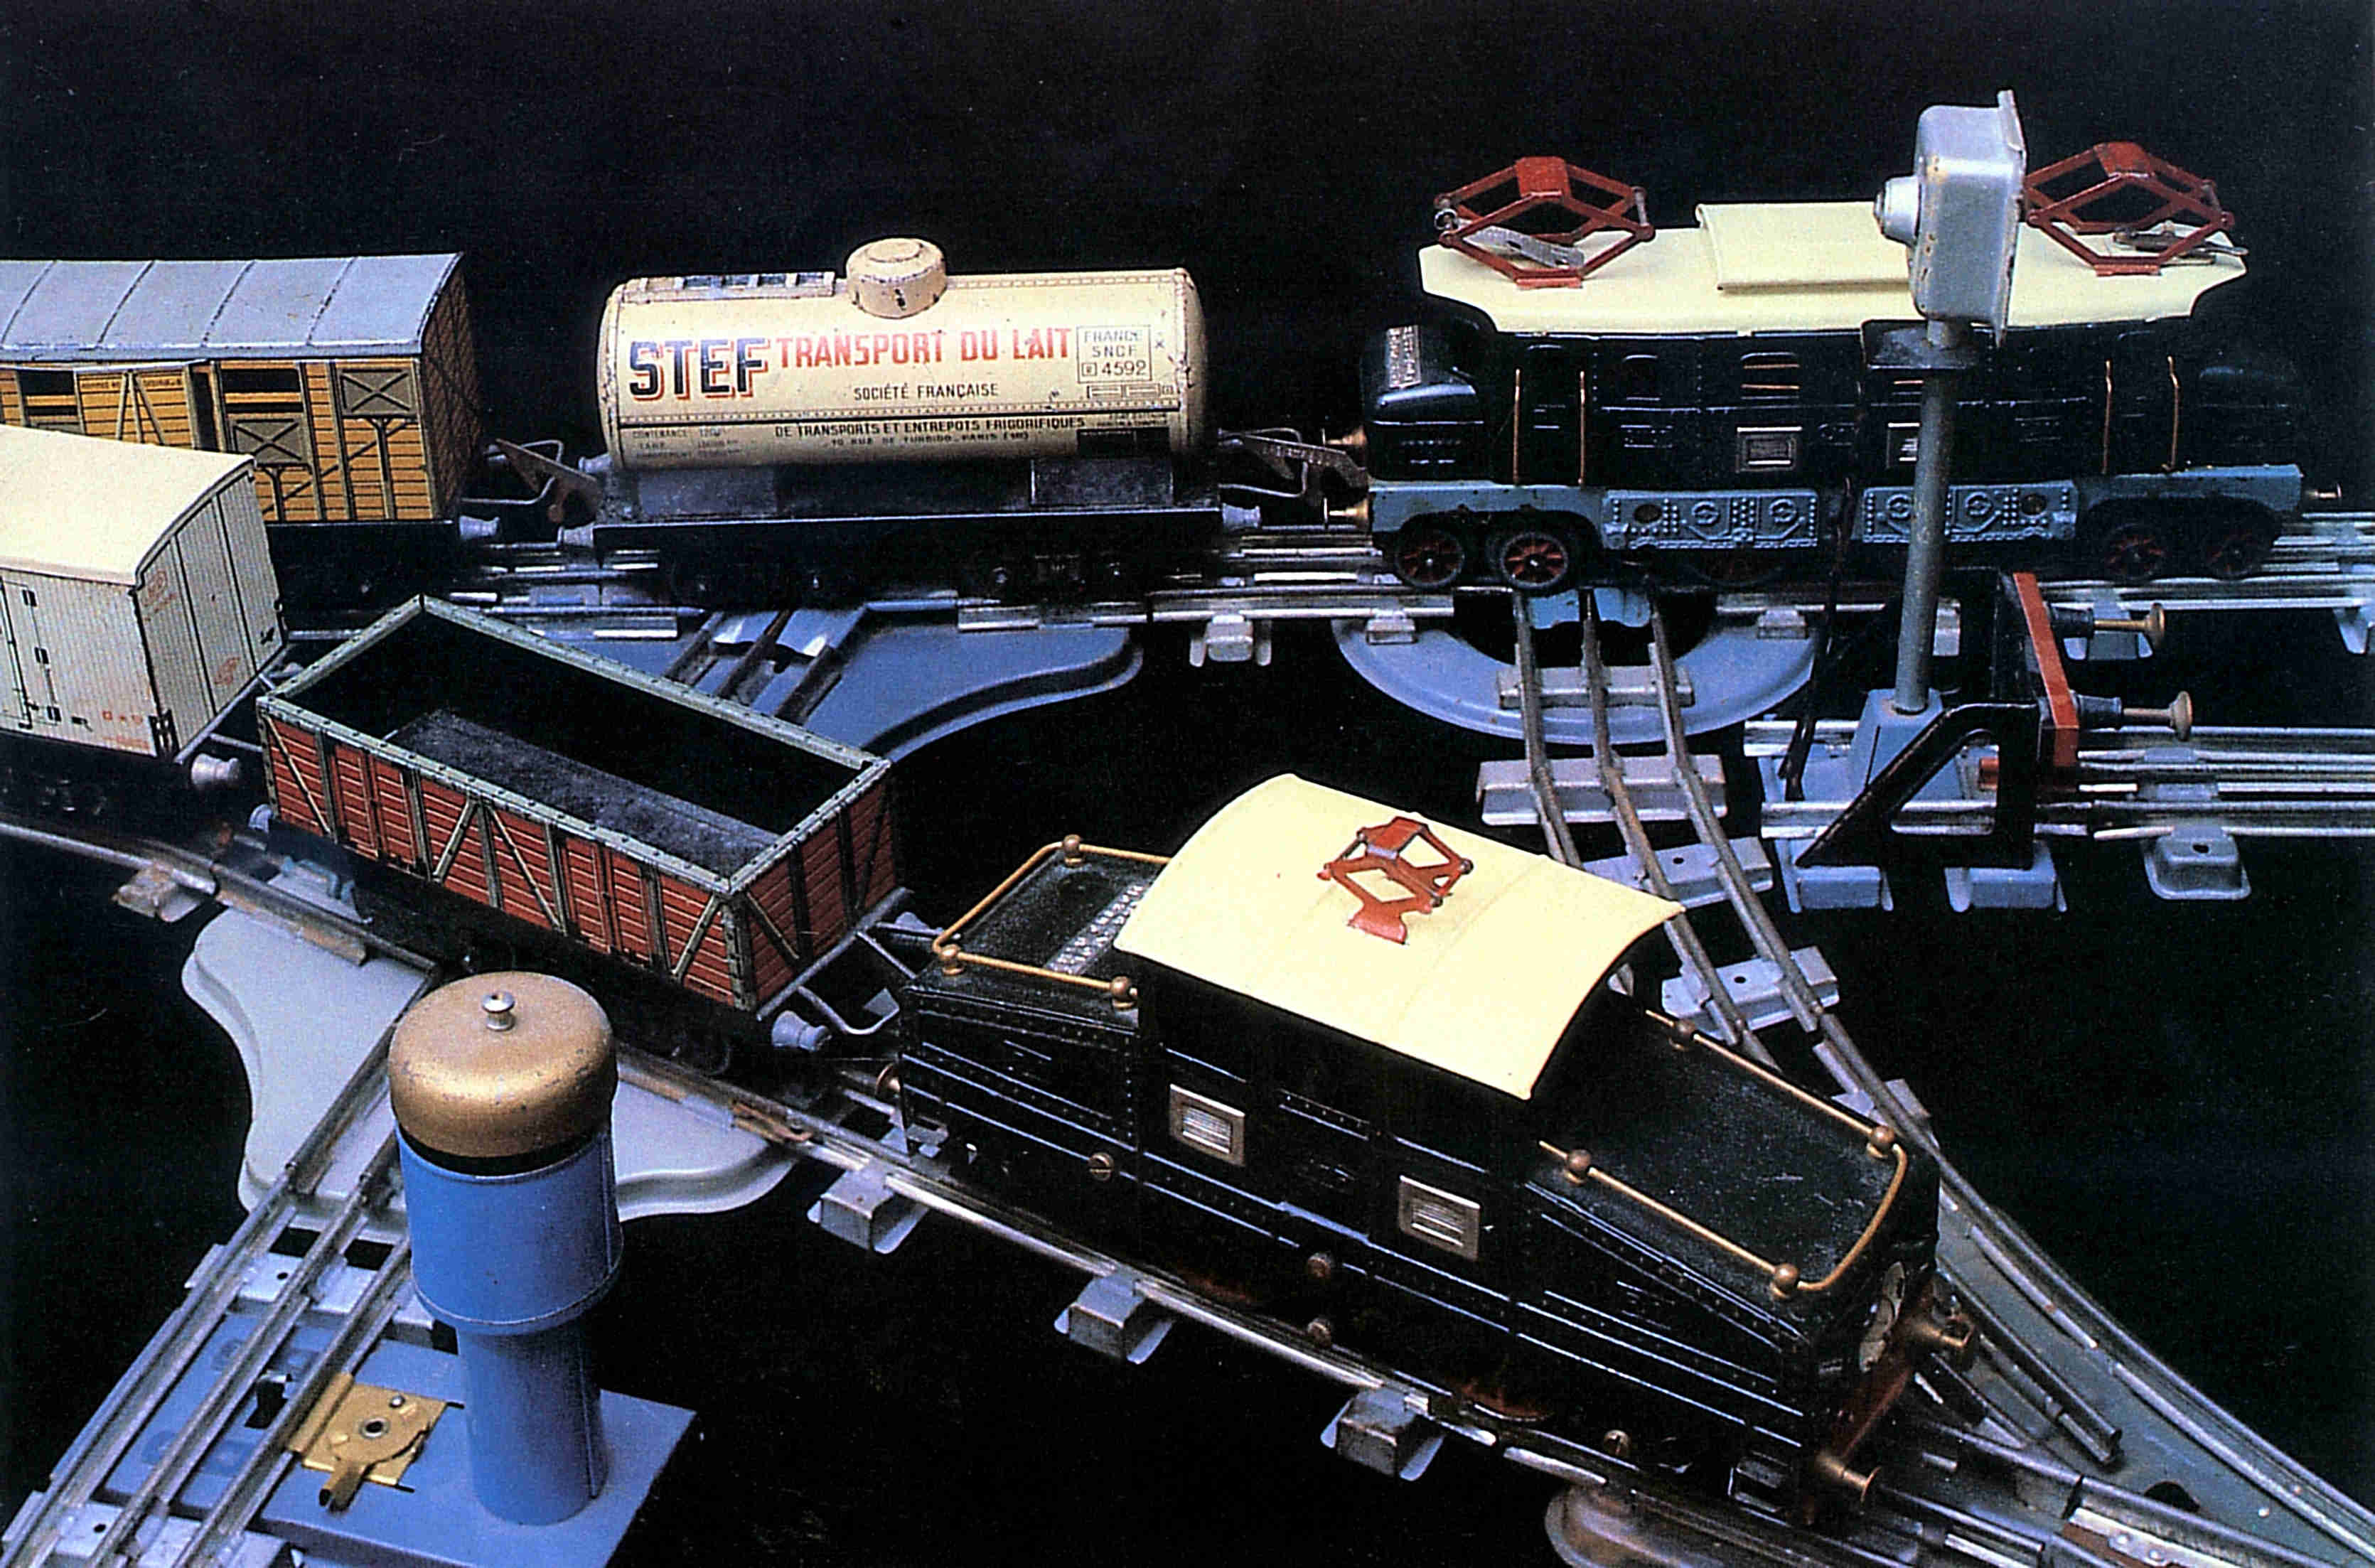 Ancien jouet mécanique mécanisme jouet modèle Train Tramway